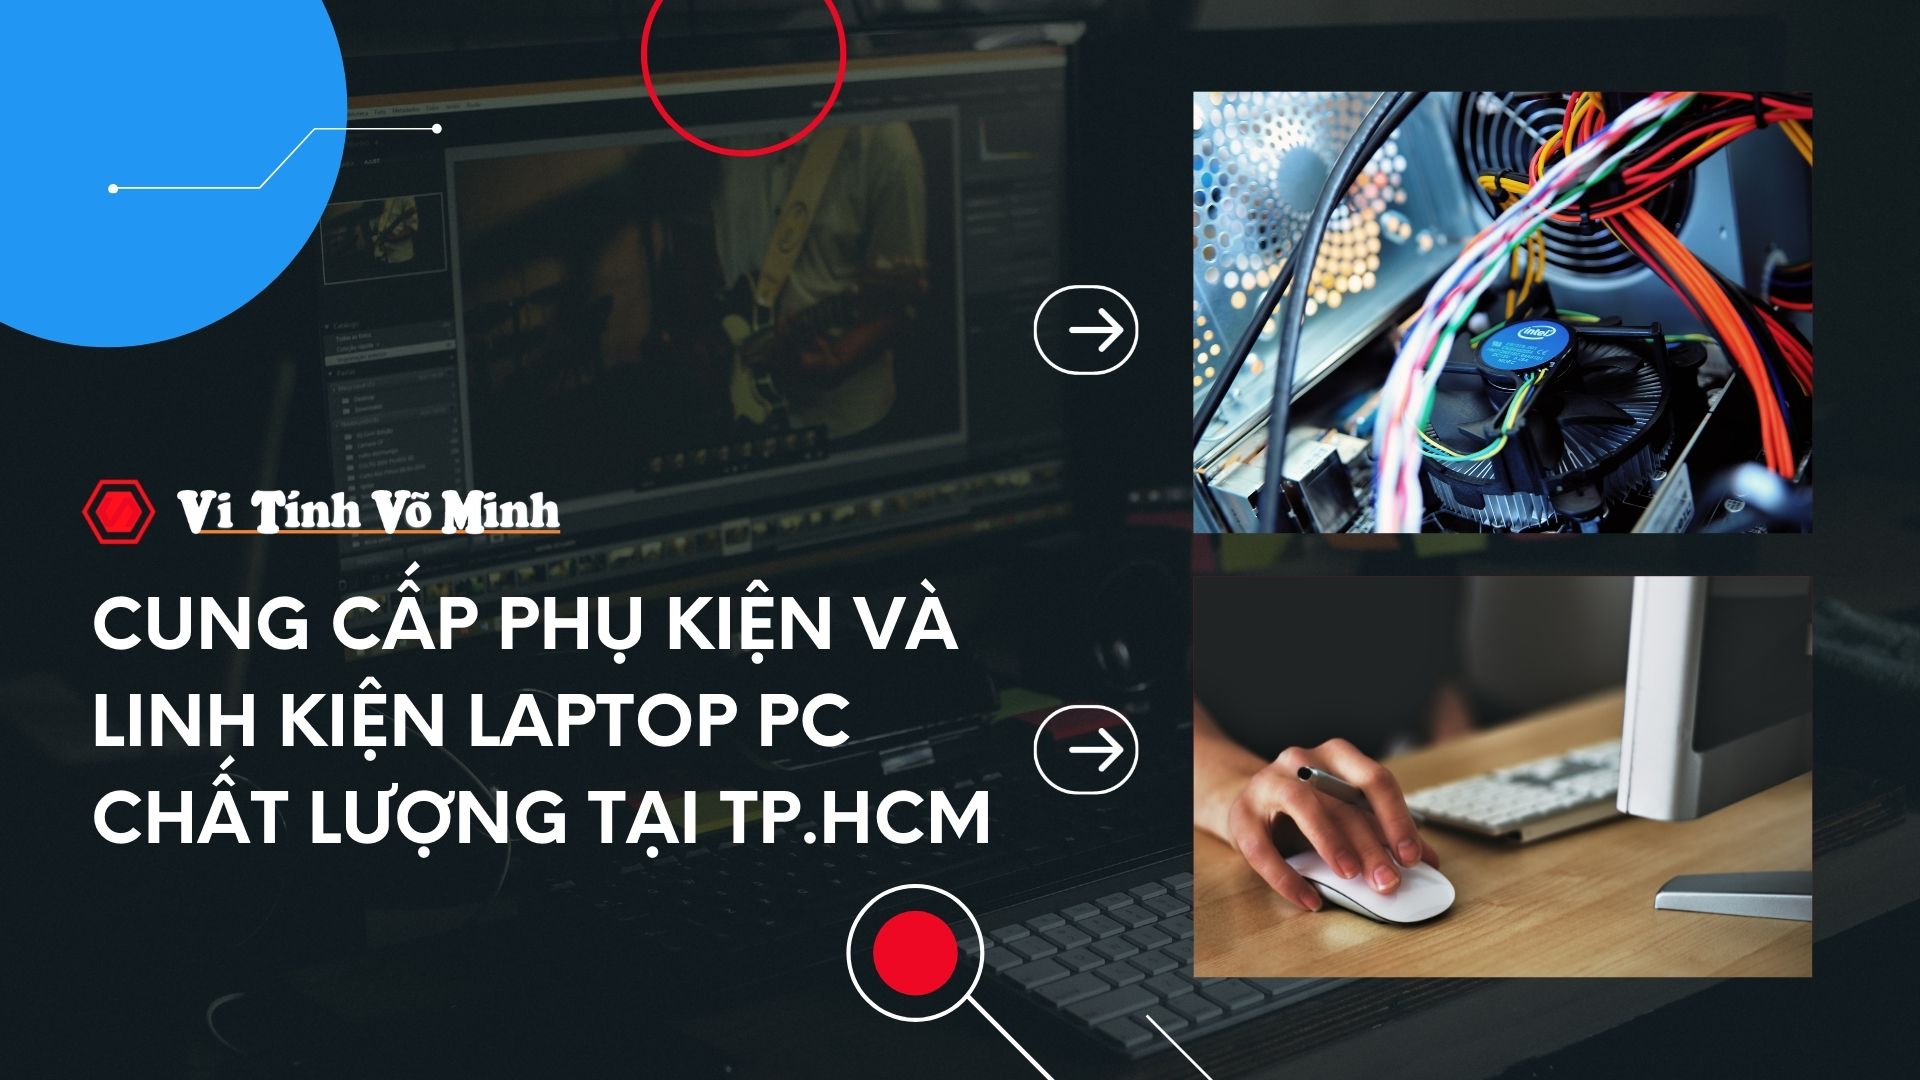 Cung cấp phụ kiện và linh kiện Laptop PC chất lượng tại TP.HCM